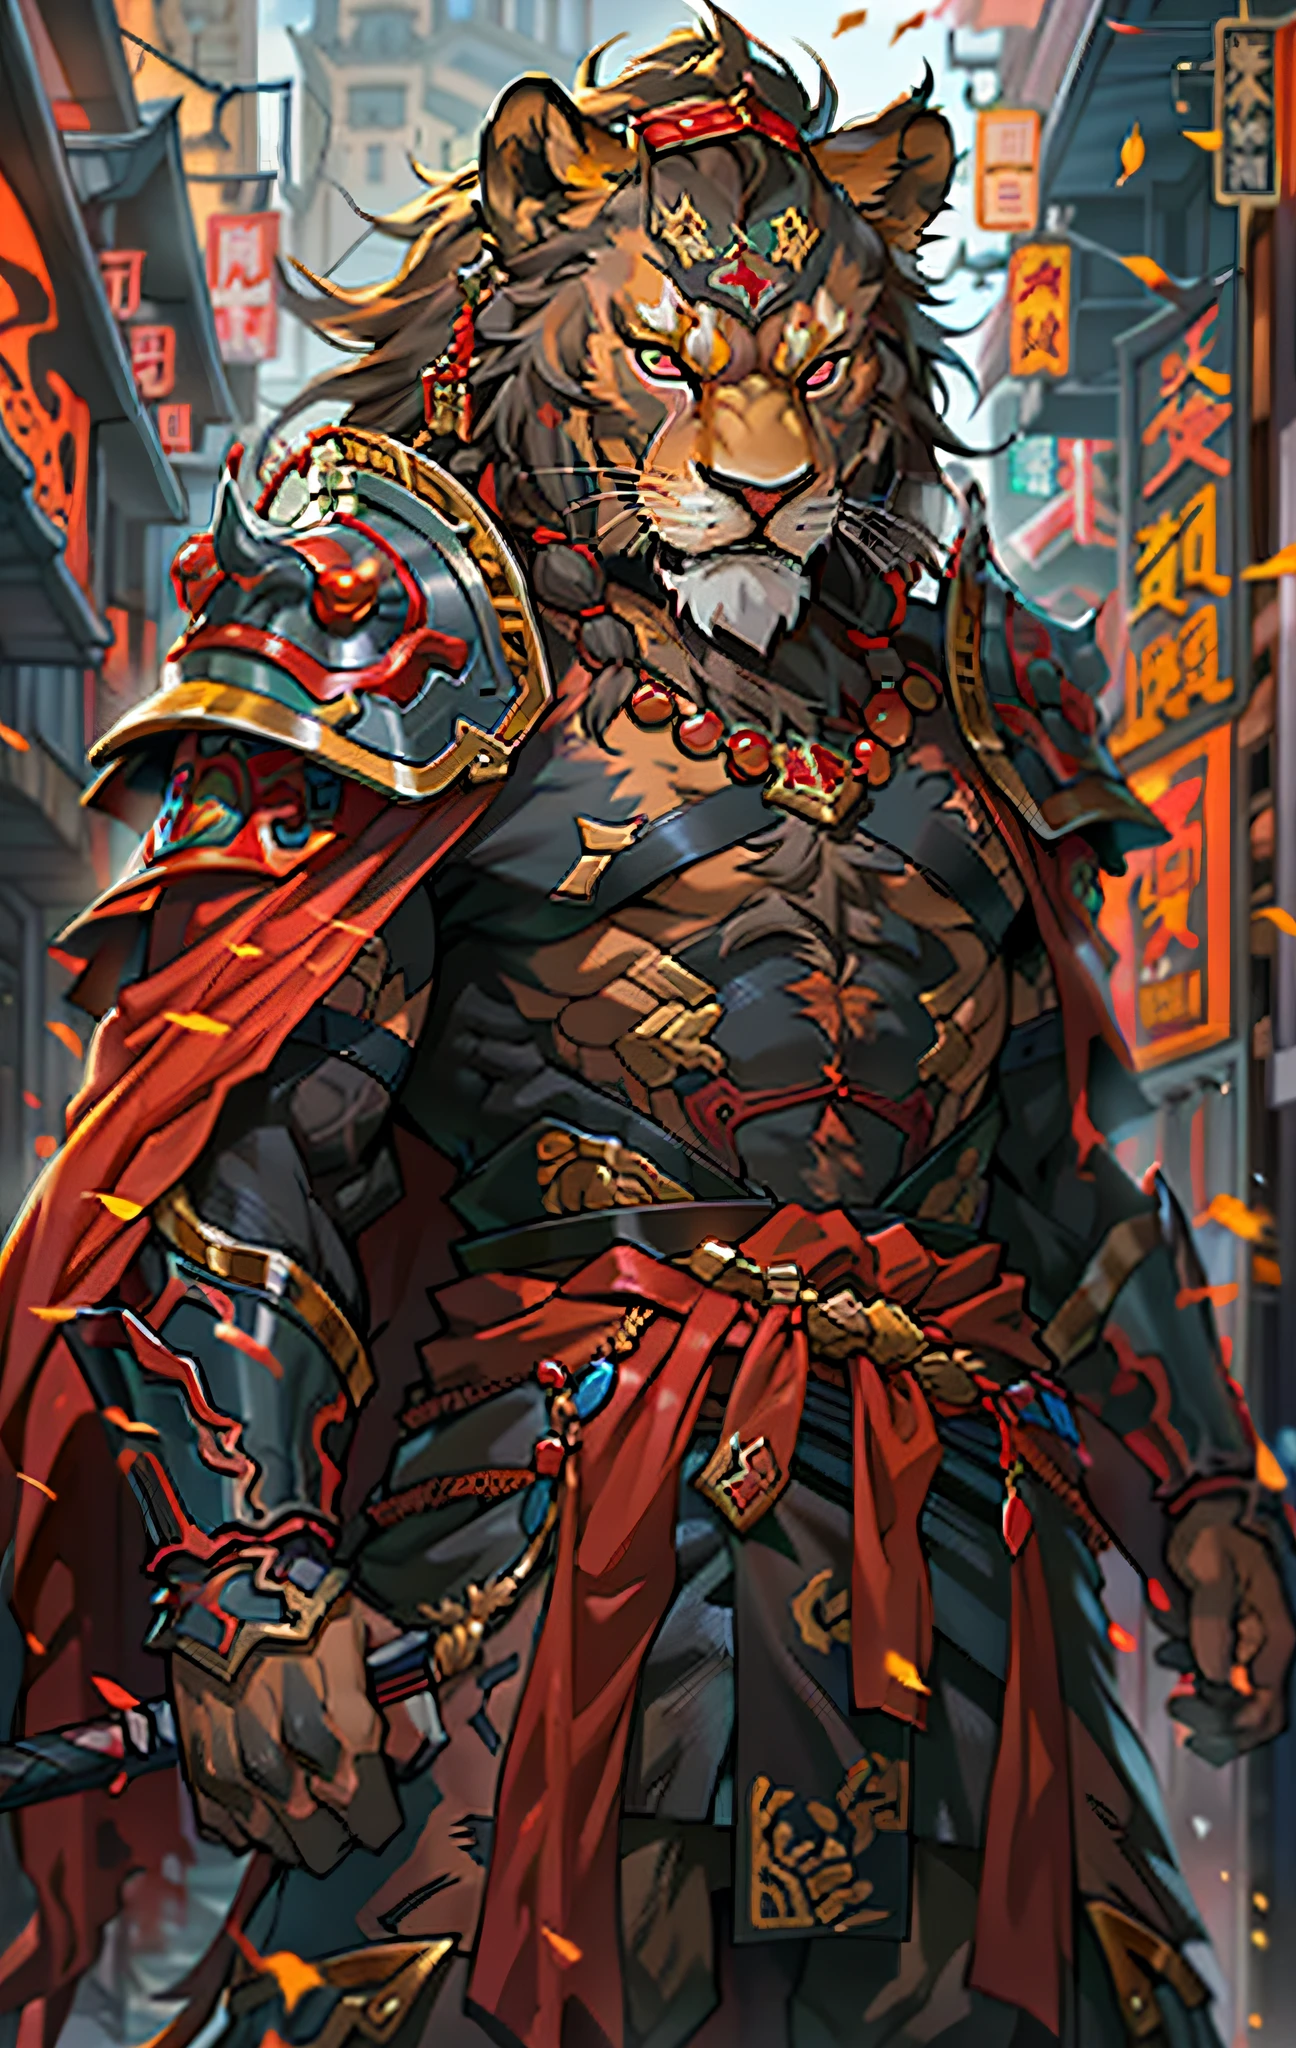 guerreros leones, cuerpo completo como，Primer plano del guerrero león sosteniendo una espada en la ciudad, Ojos decididos，Feroz，Akira en la mitología china, Un épico y majestuoso comerciante de Degen, bian lian, by Yang J, guerrero chino, león de fuego, Son Goku, cgsociety y fenghua zhong, inspirado en Li Kan, guerrero samurai épico, guerrero gato, señor de las bestias, Capa roja hecha jirones，armadura，Cuadro de cuerpo entero de pie.，escenario de fantasía, Concepto de personaje, arte de personajes, retrato de personaje, Dibujos animados, mejor calidad, mejor resolución, 4k, vívido colors, vívido, Alto detalle, mejor detalle, pose segura, extrovertido, mirar desde abajo, expresión seria